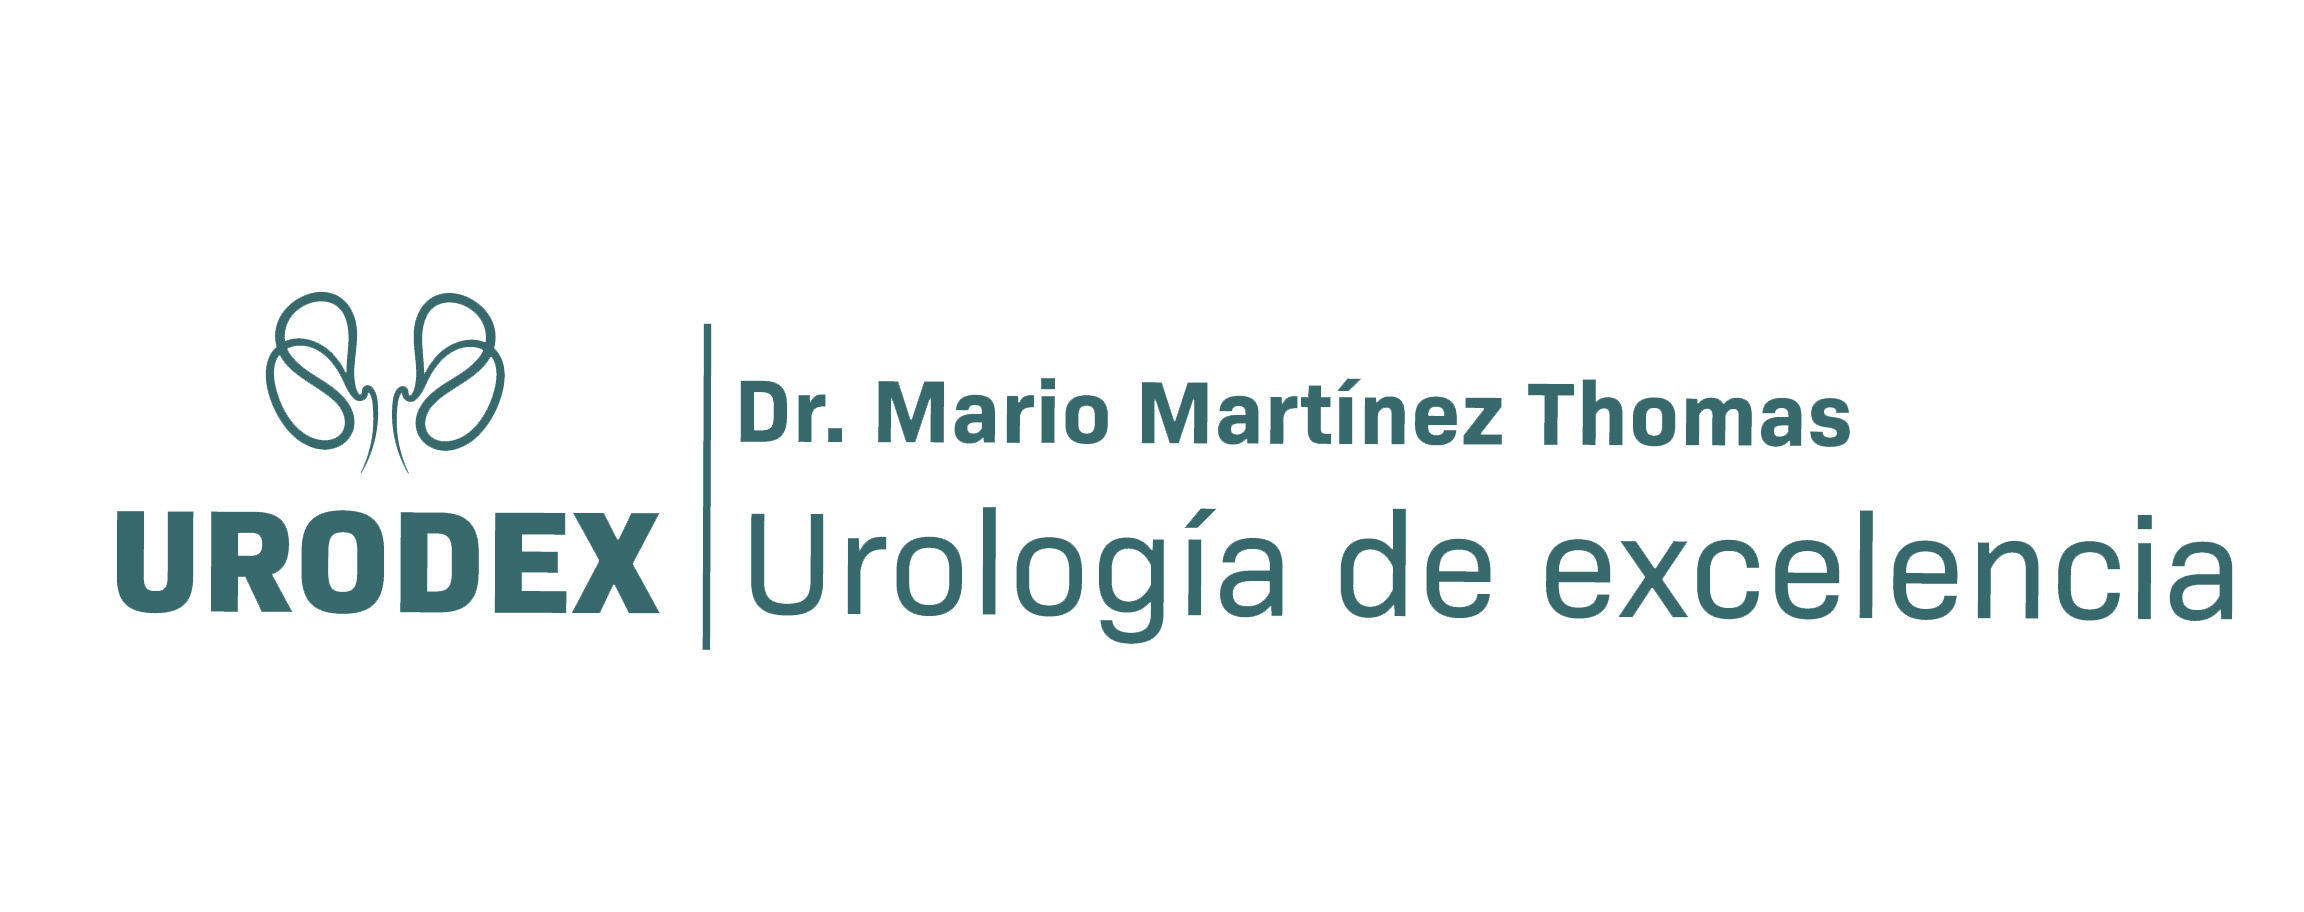 Urodex | Urología de excelencia